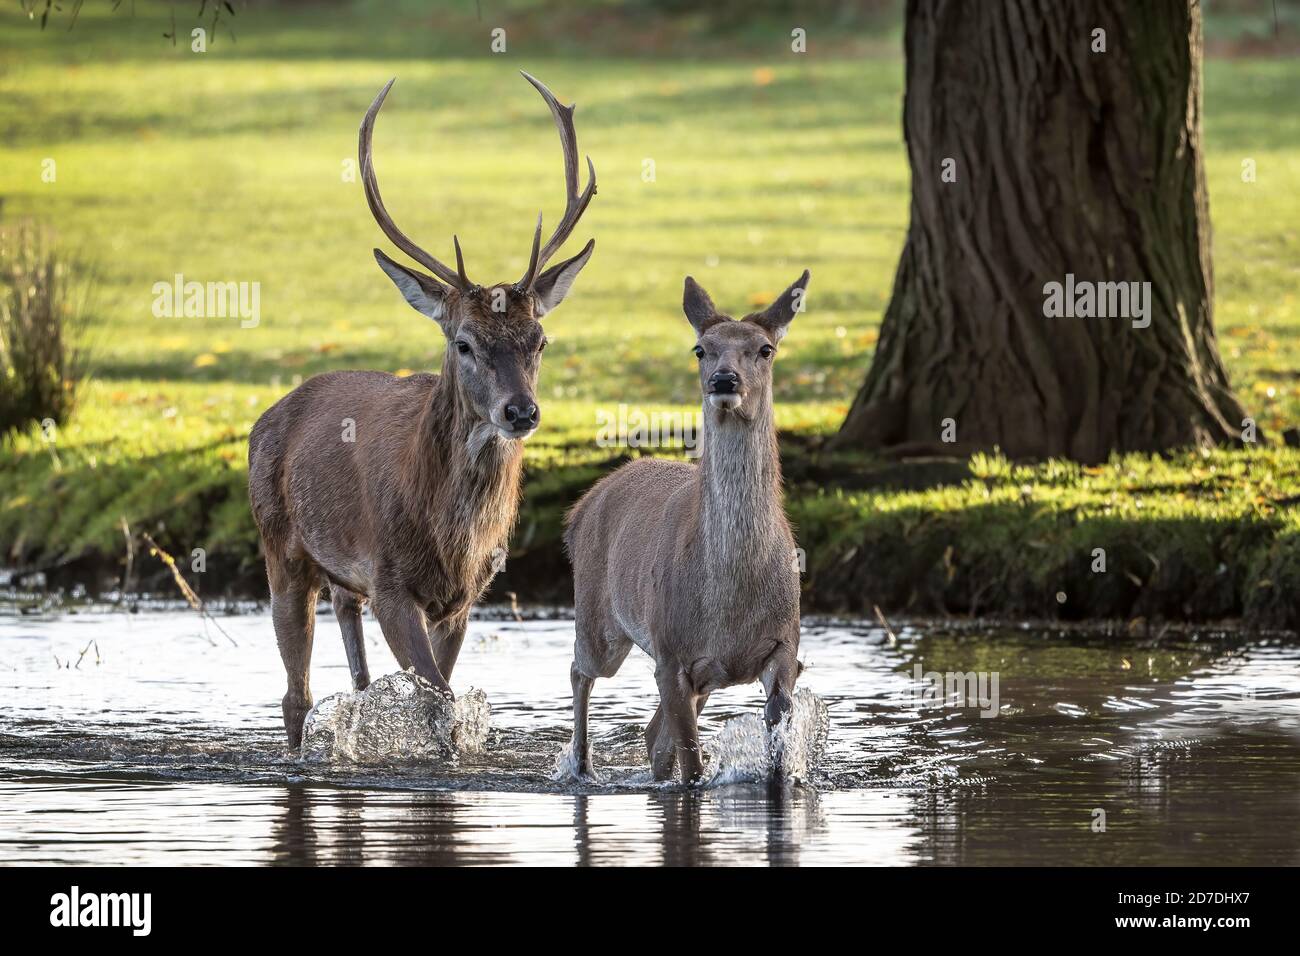 Un par de ciervos vadeando por el agua tomando un atajo al otro lado Foto de stock